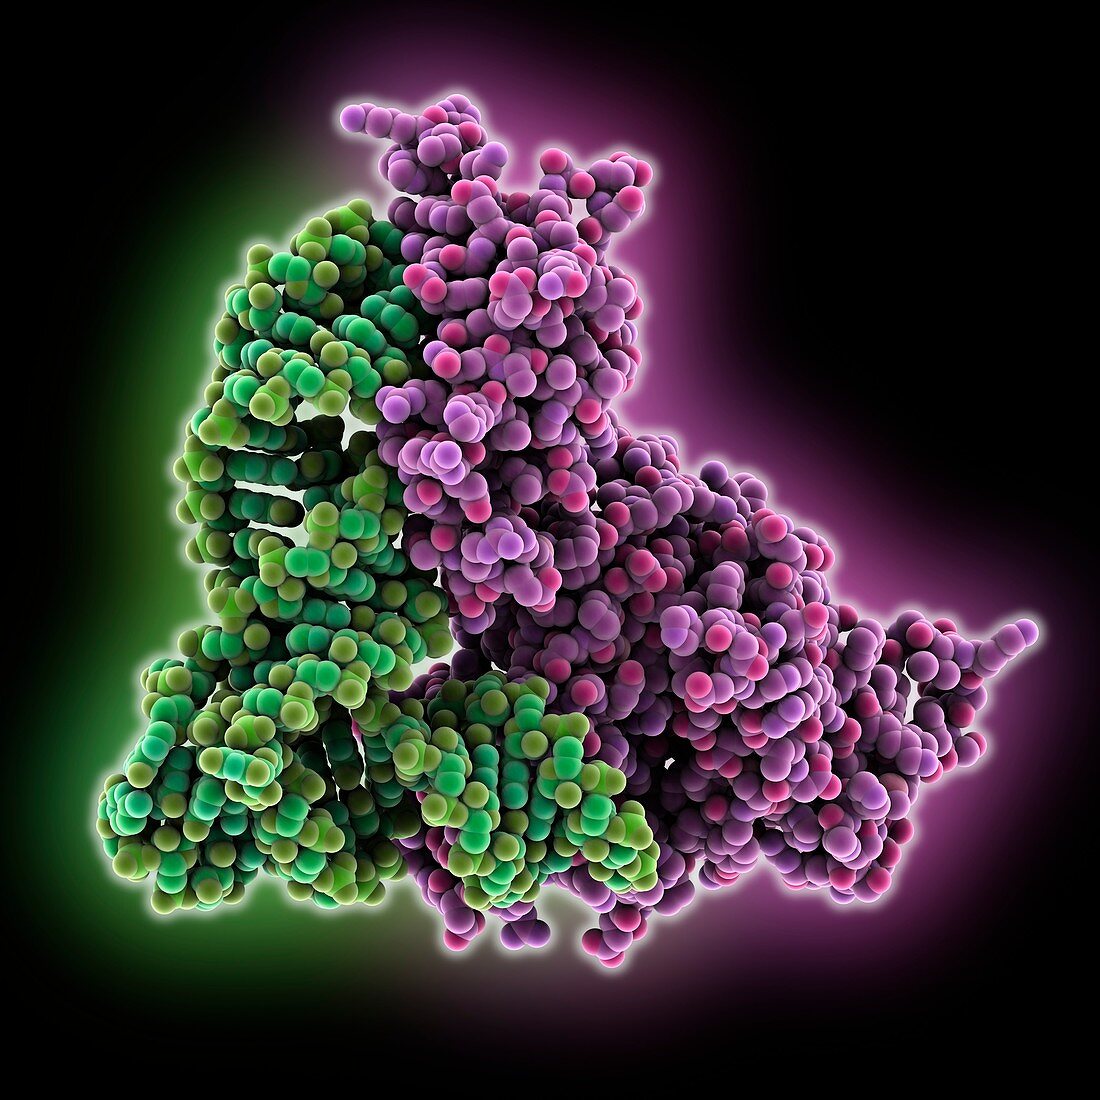 Mitochondrial tRNA synthetase tRNA complex